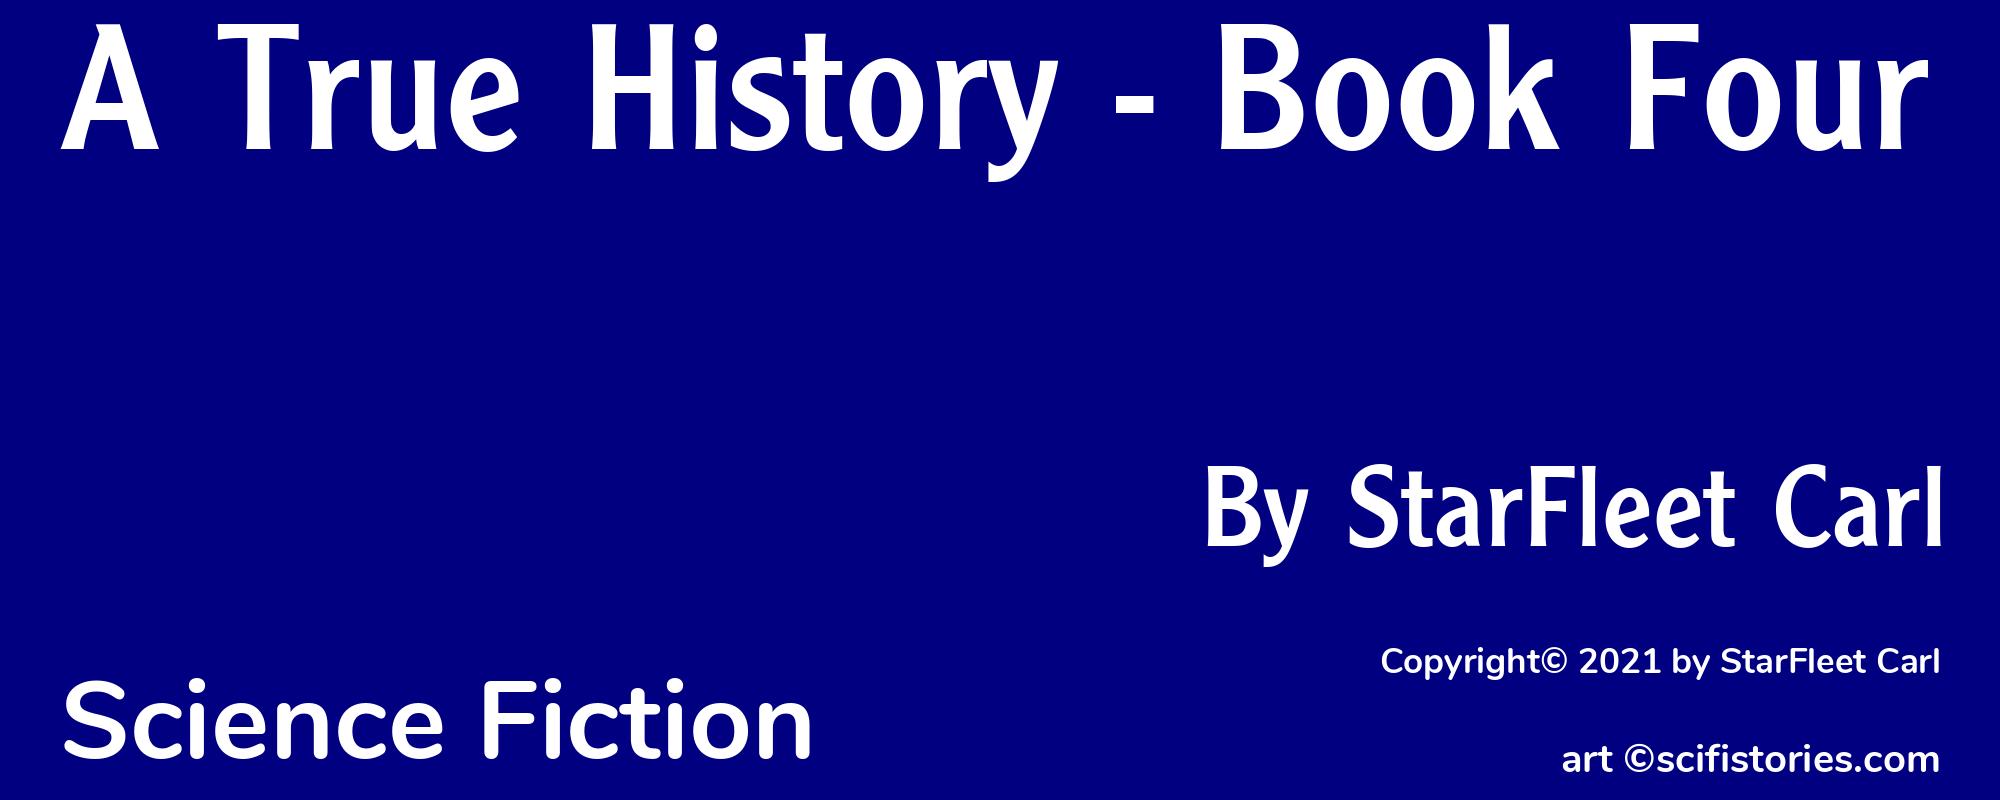 A True History - Book Four - Cover